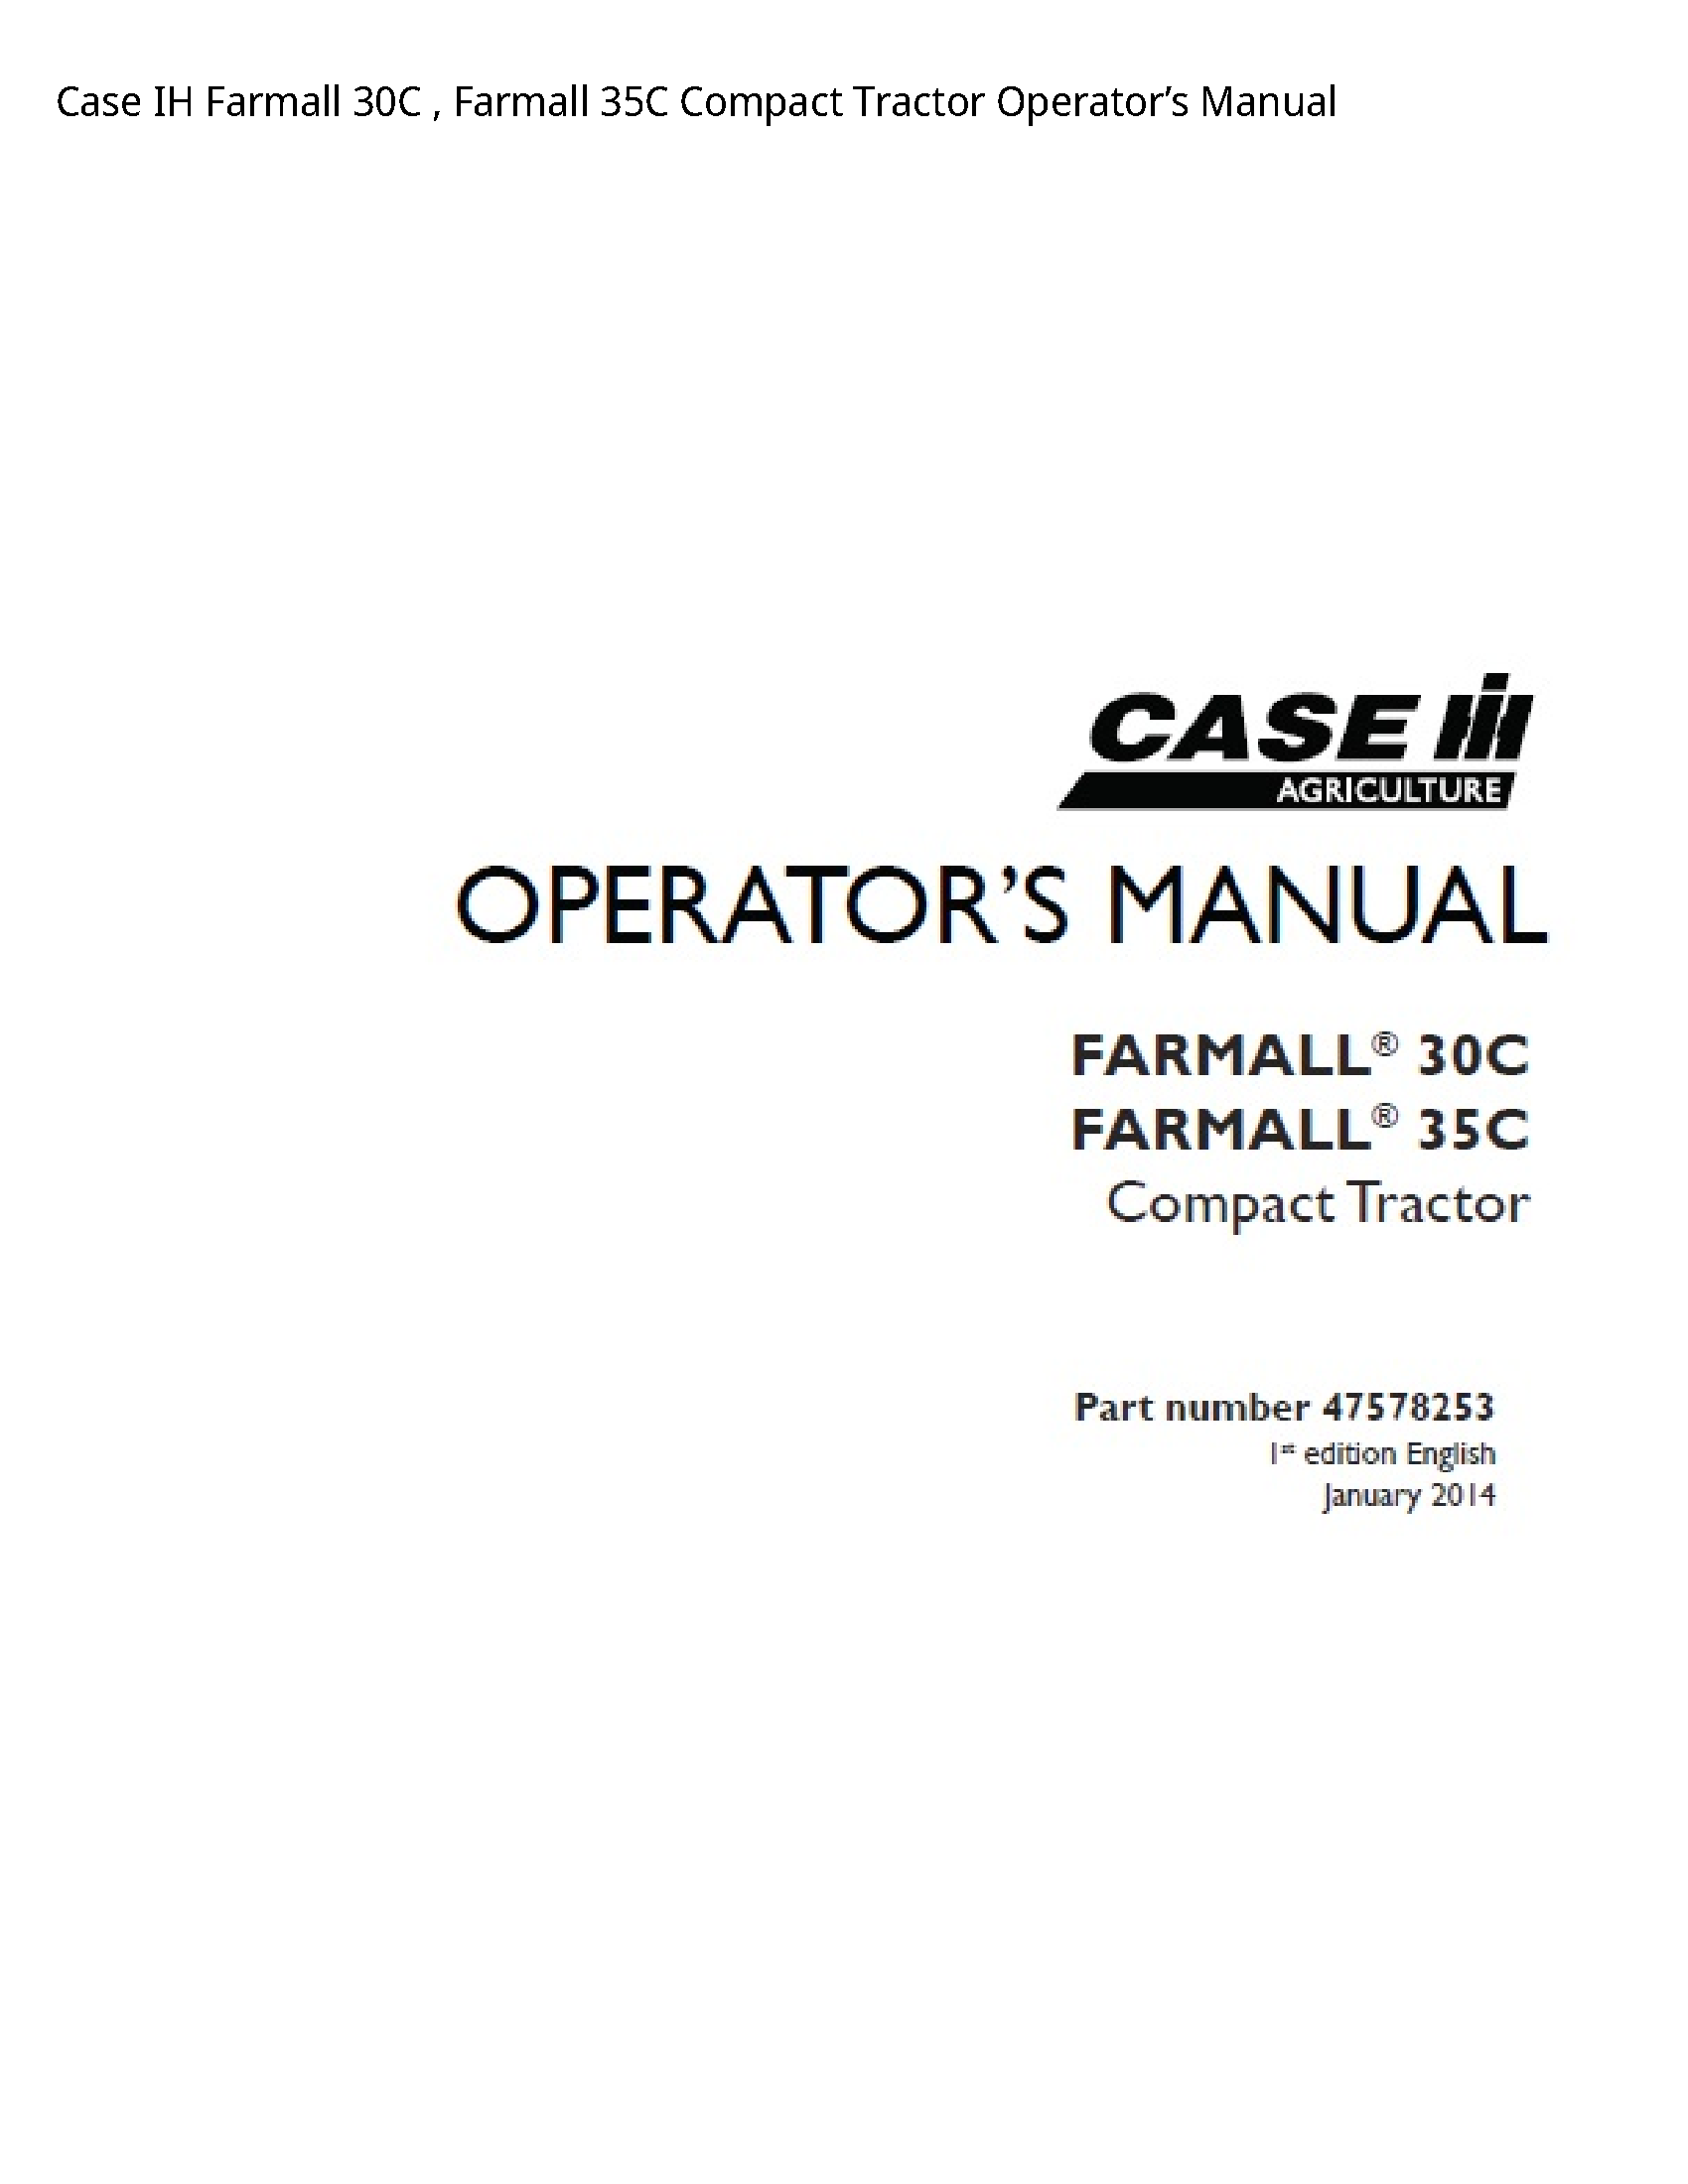 Case/Case IH 30C IH Farmall Farmall Compact Tractor Operator’s manual